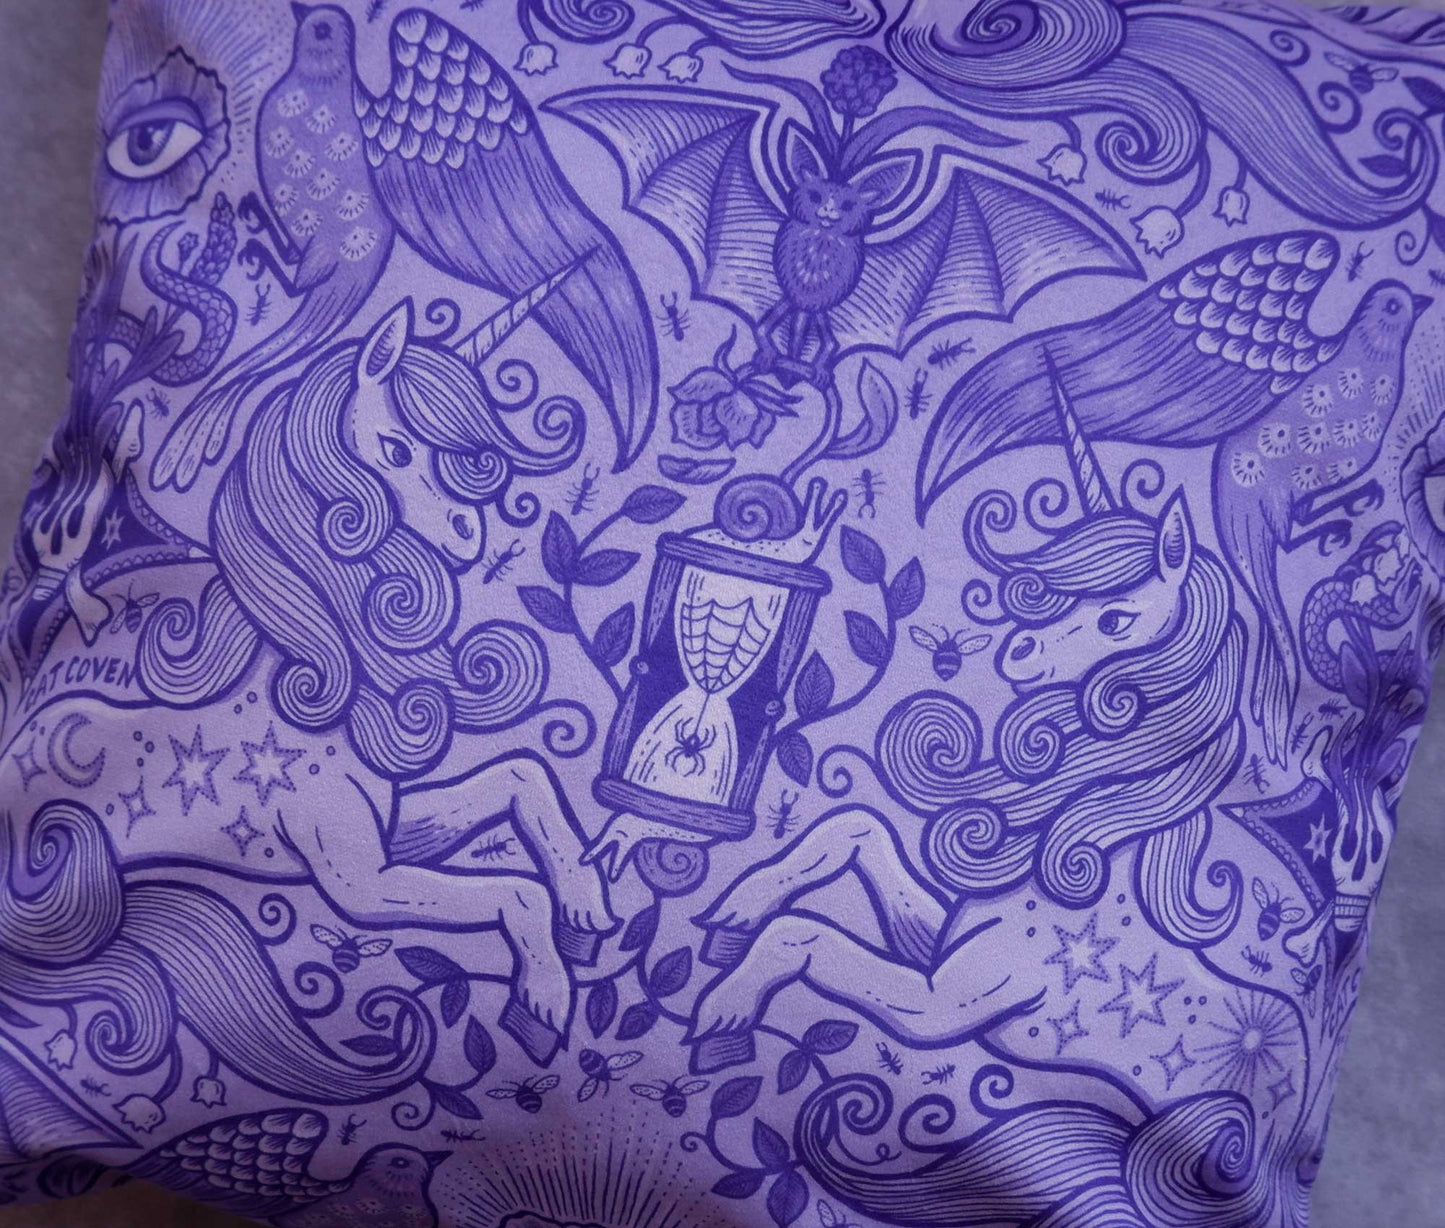 Spring Awakening (Lavender) - Decor Pillow Cover